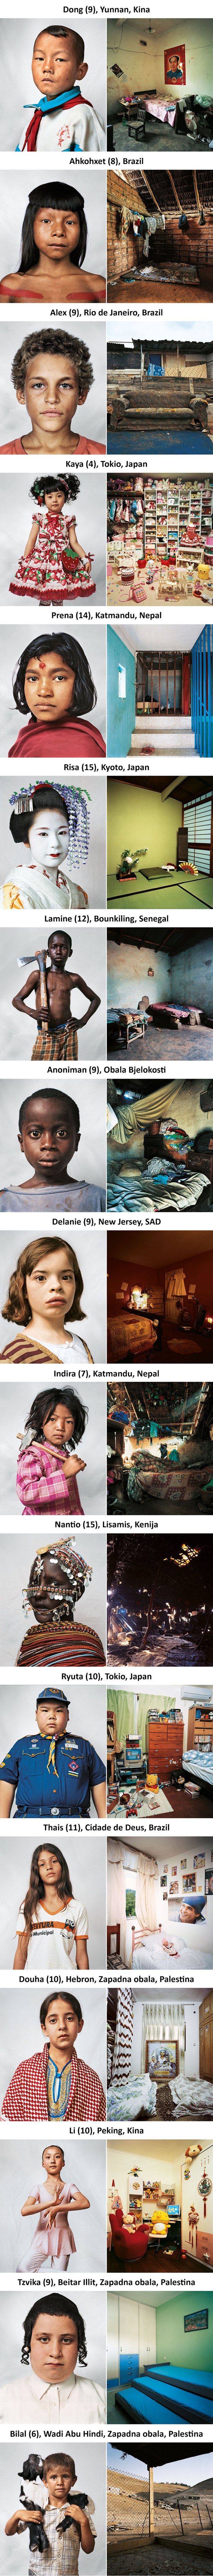 Slike spavaćih soba djece iz raznih država pokazuju svu nejednakost i nepravdu koja vlada ovim svijetom